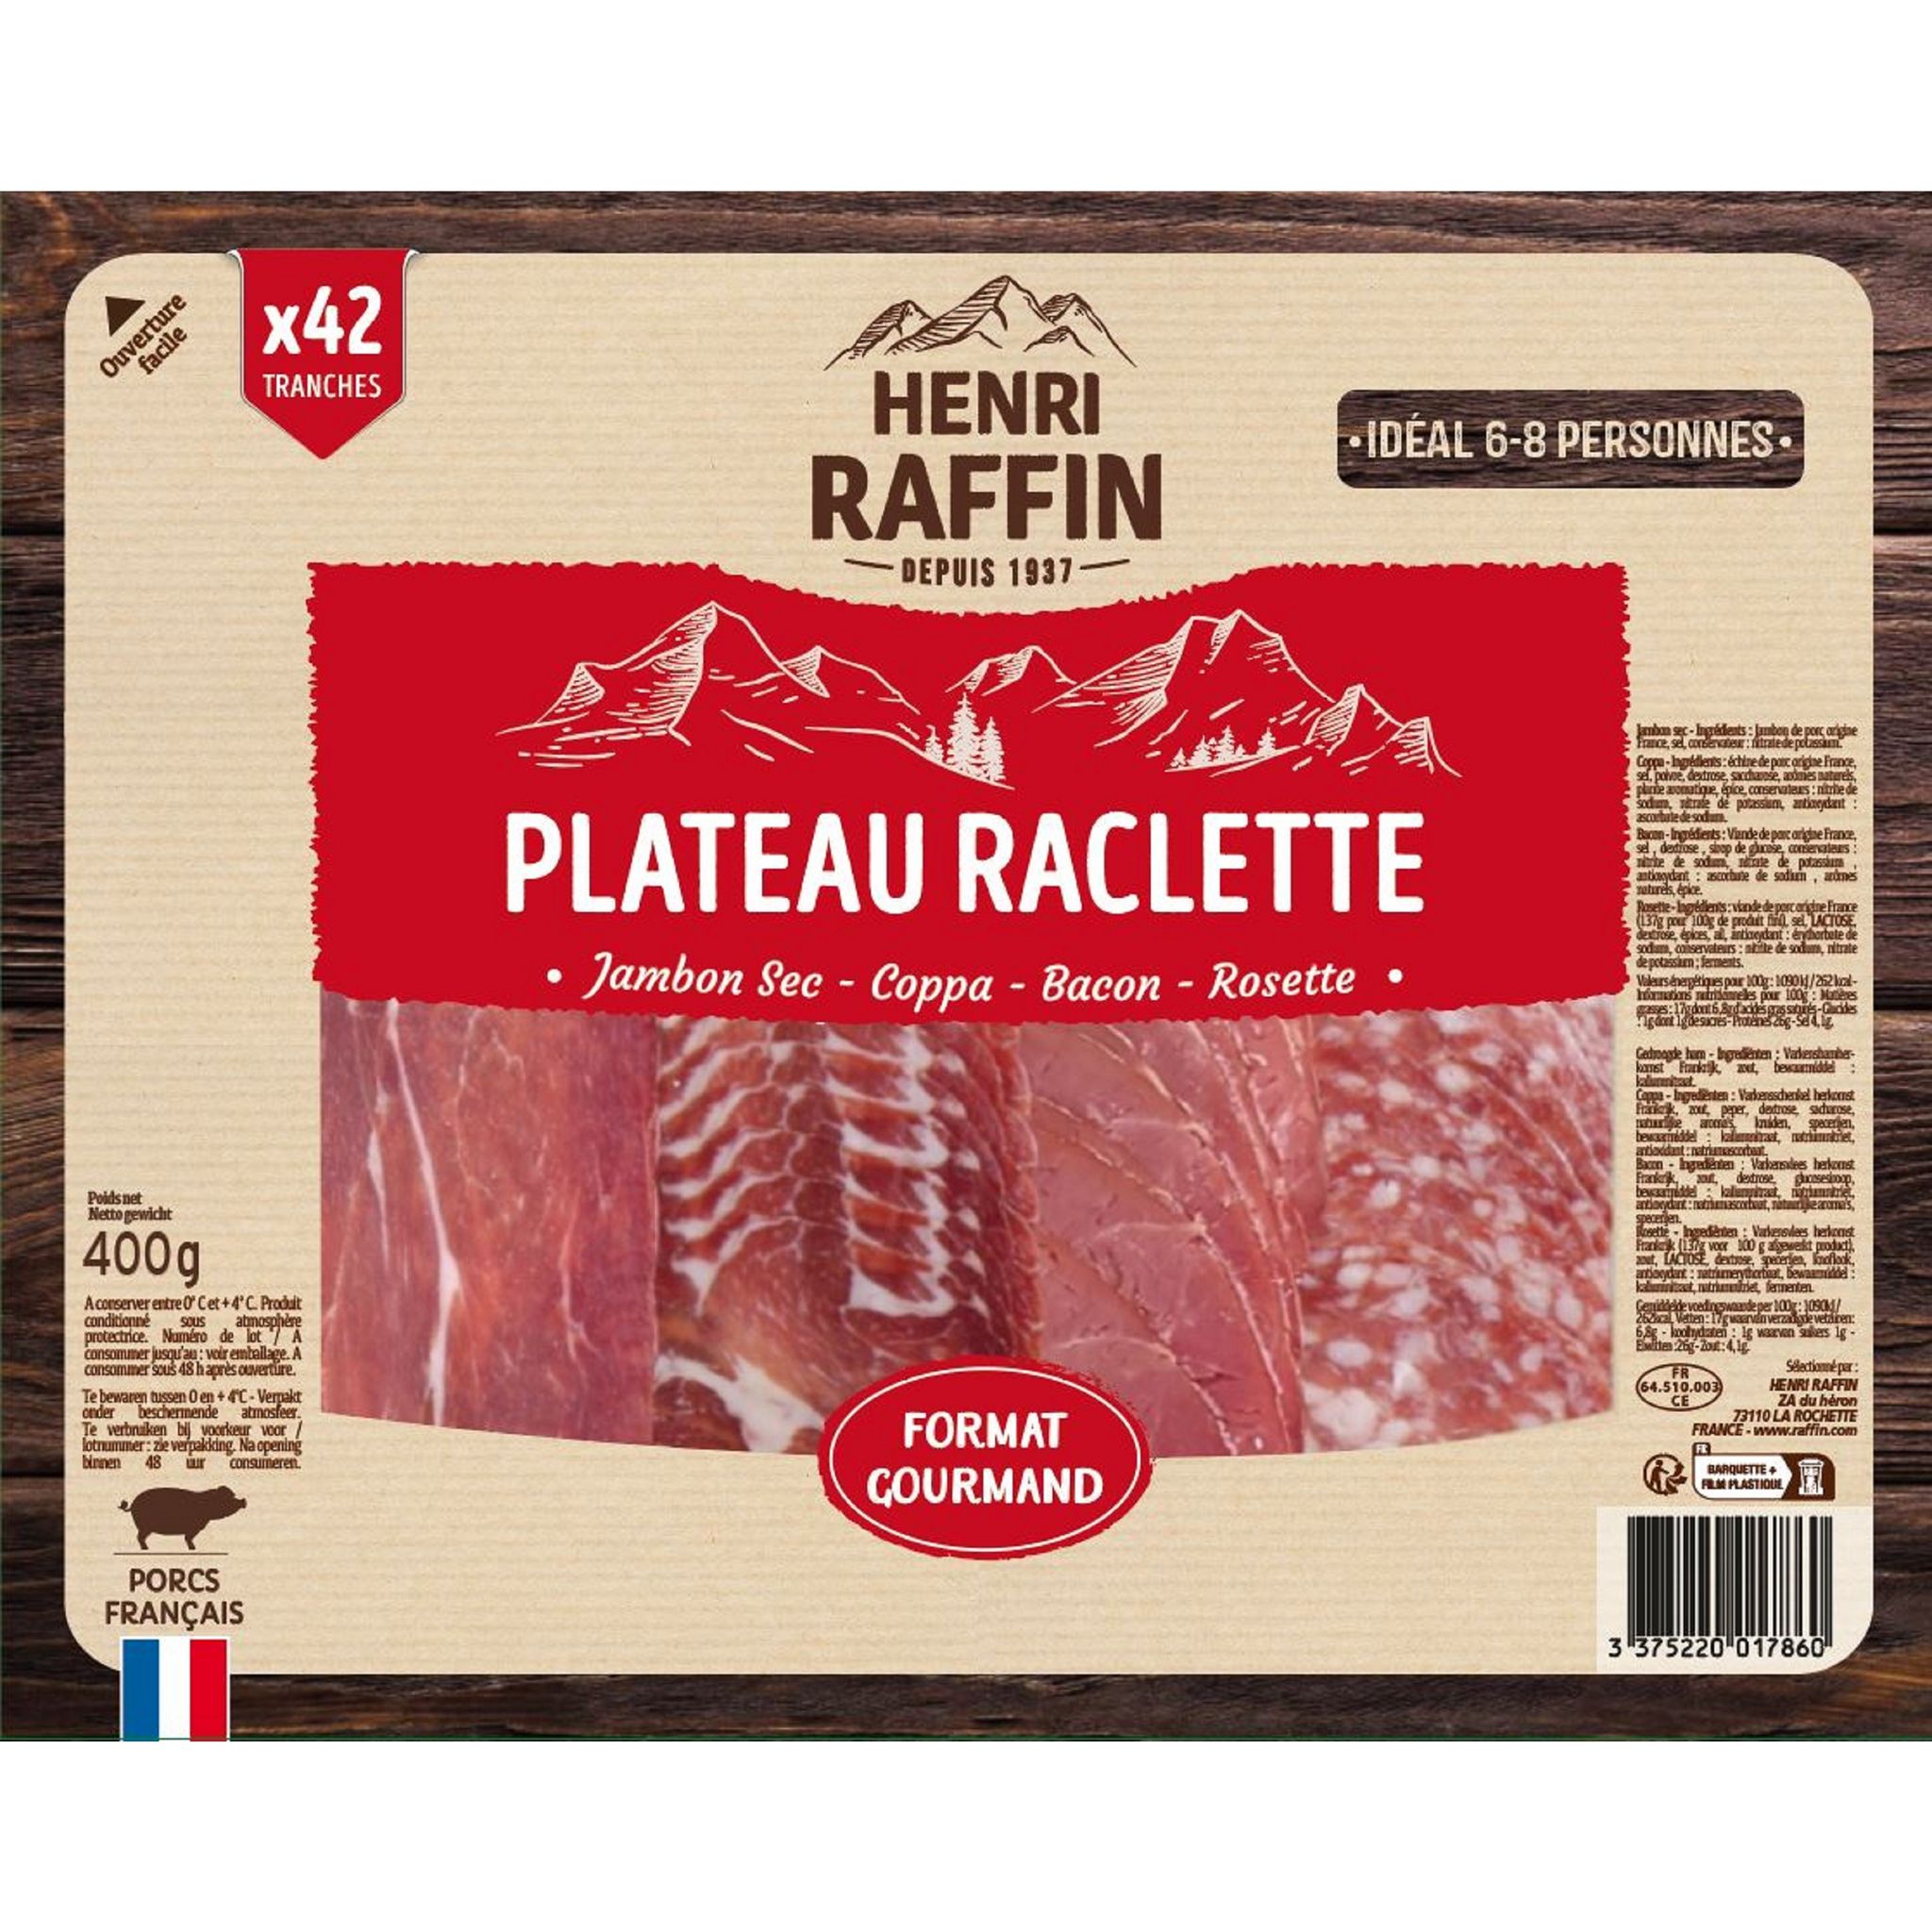 Assortiment Raclette 8-10 personnes. Jambon blanc, jambon sec, rosette,  bacon, pavé au poivre